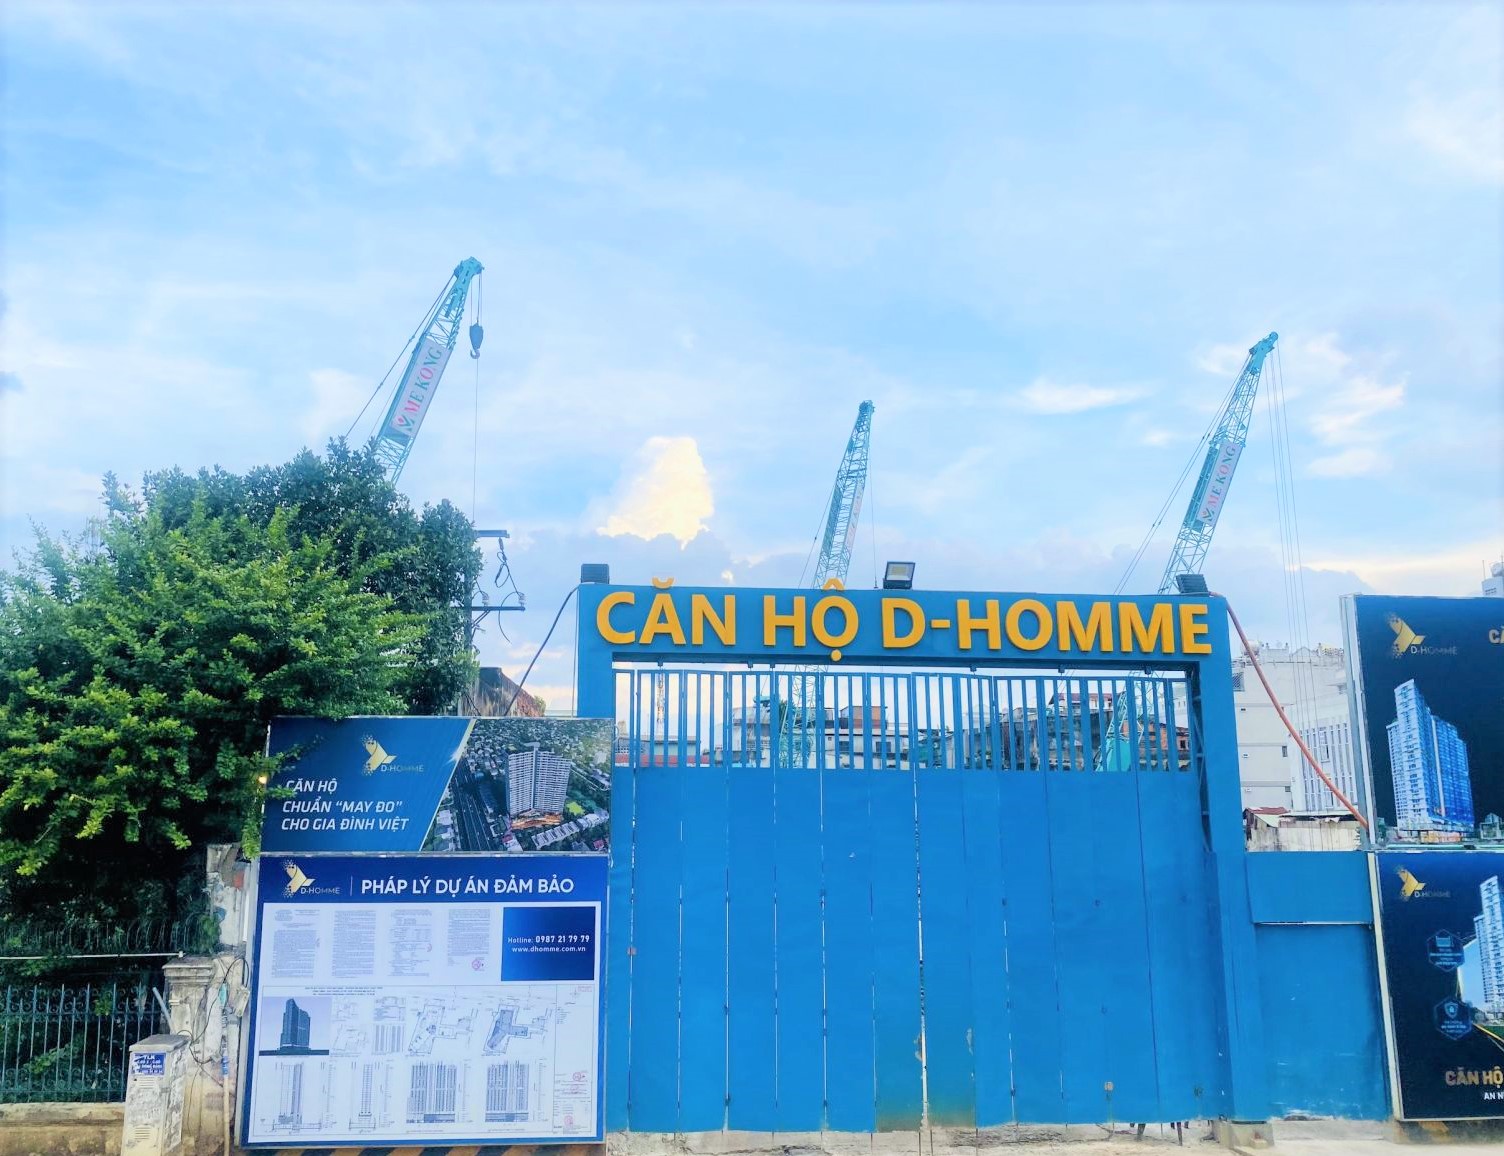 D-Homme là tên thương mại của Dự án Khu chung cư kết hợp Thương mại dịch vụ tại số 765 và 751/8 đường Hồng Bàng, phường 6, quận 6, do Công ty TNHH MTV Dịch vụ bất động sản Minh Anh làm chủ đầu tư.